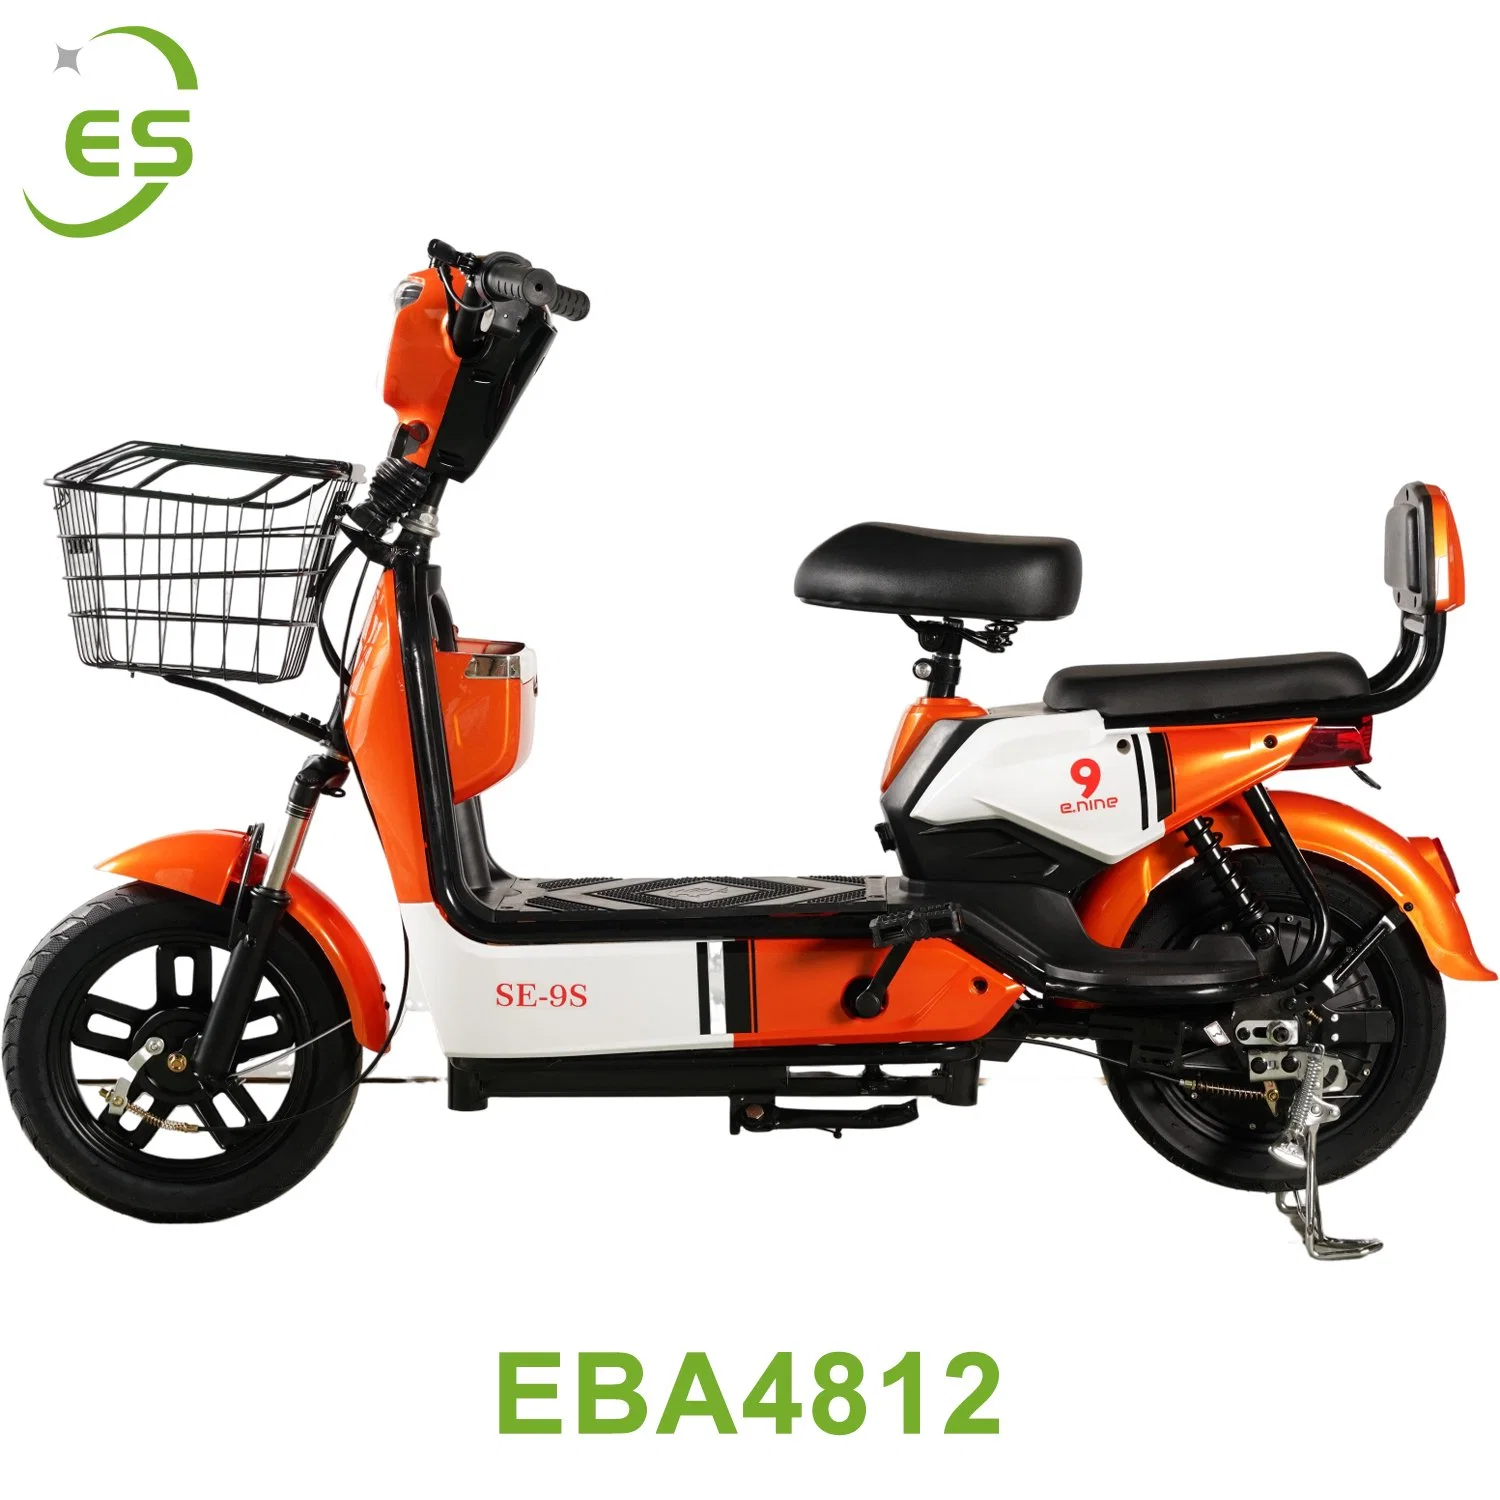 Bateria de 48V12Ah Motor de 350W Bicicleta Elétrica Scooter Motocicleta Venda Quente Direto da Fábrica.